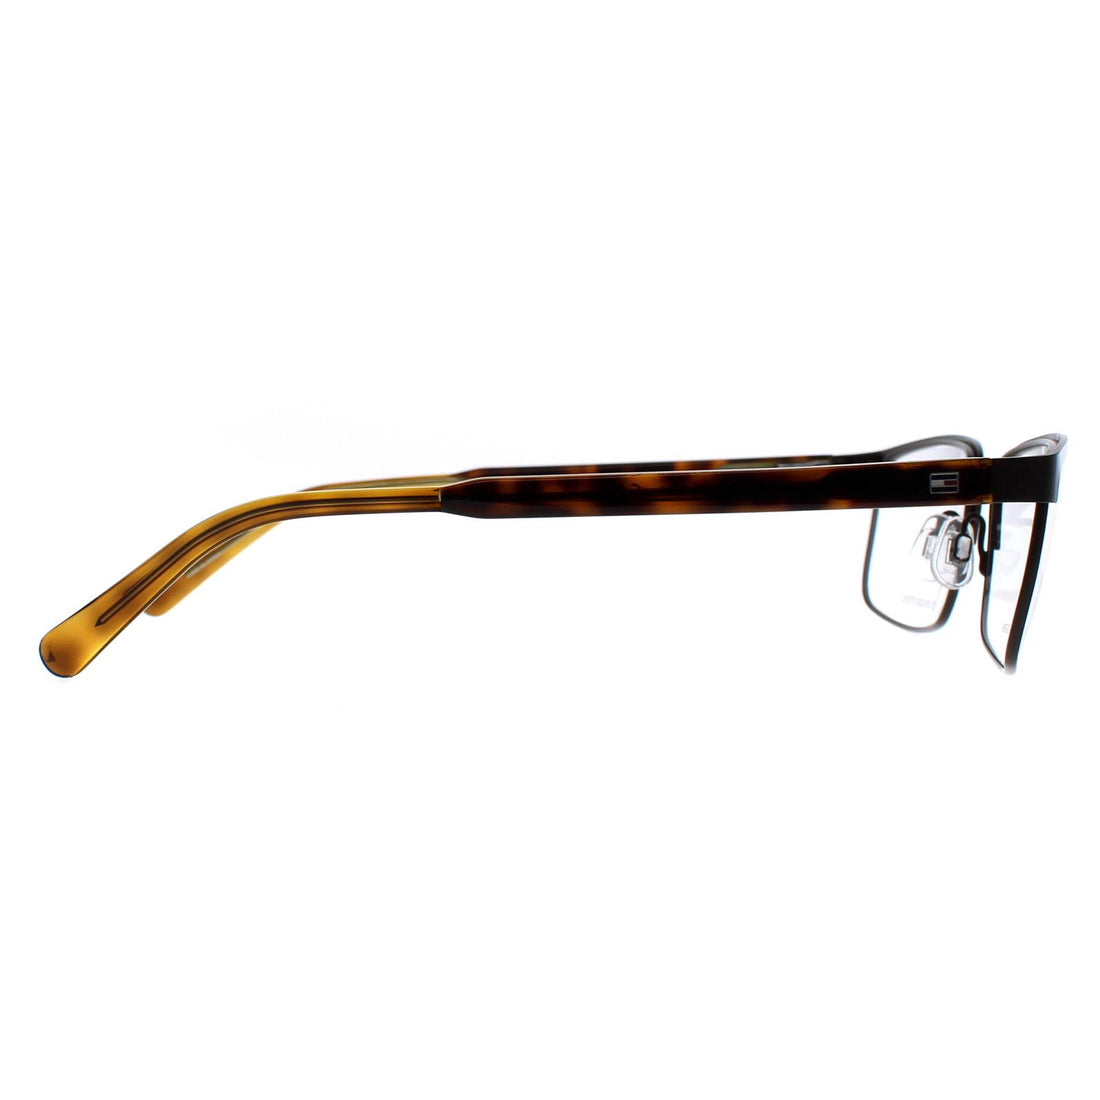 Tommy Hilfiger Glasses Frames TH 1235 1IQ Matte Brown Green Men